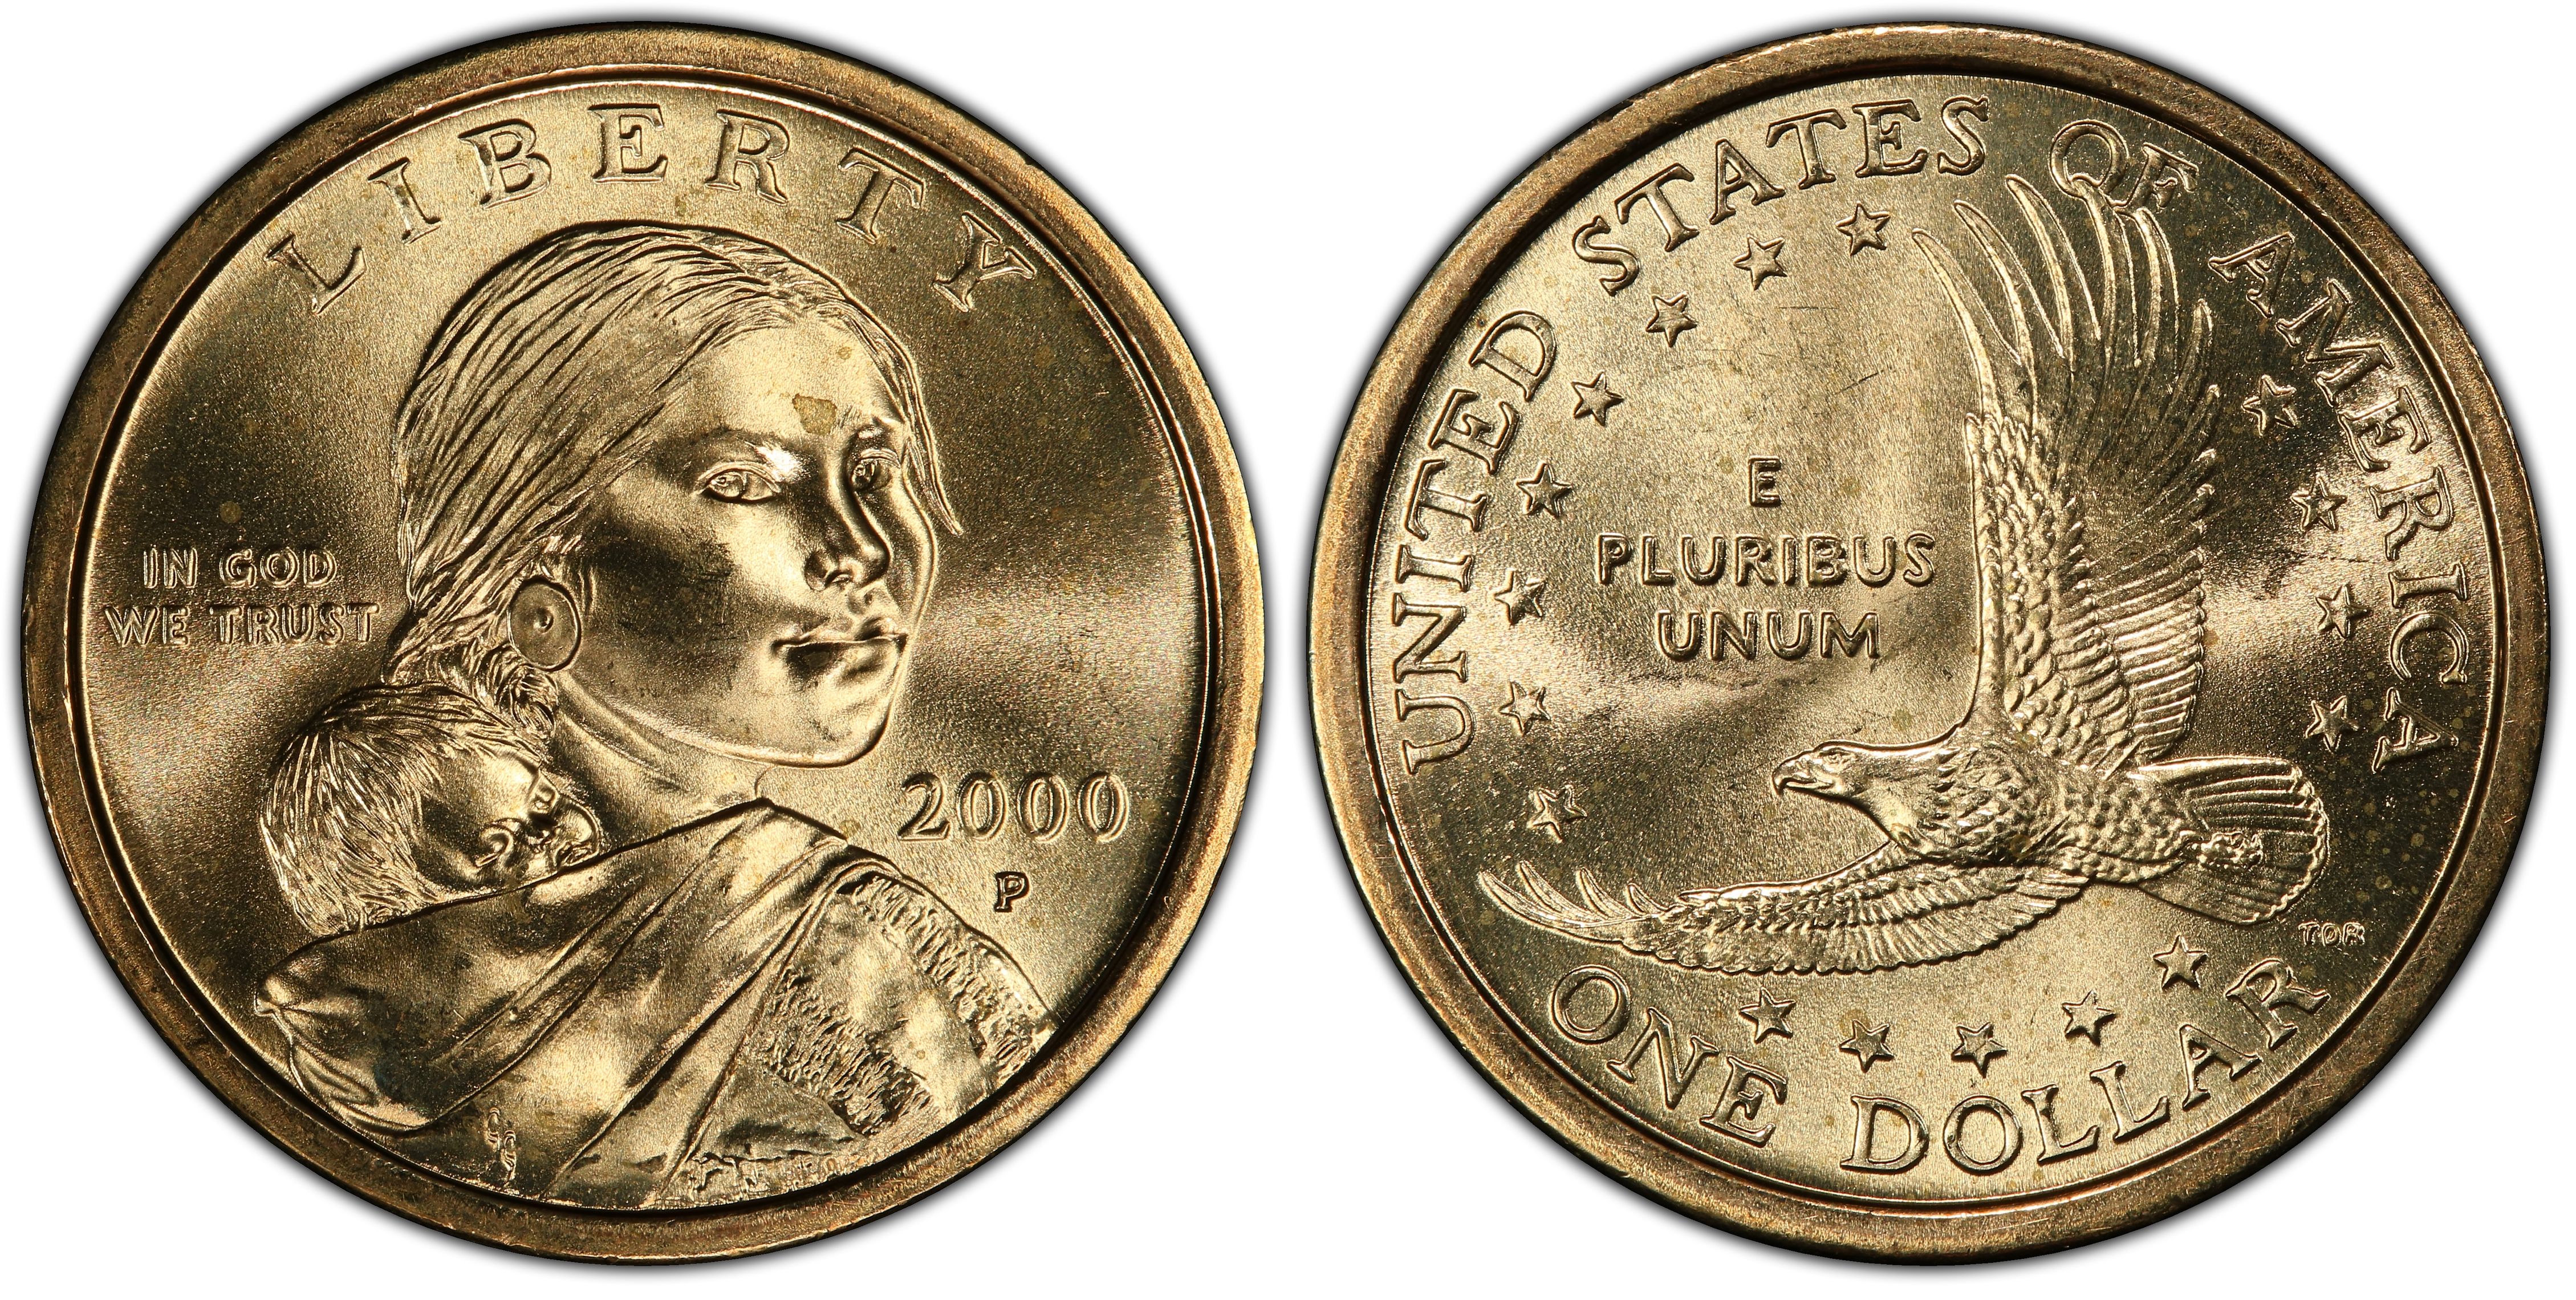 1 Dollar Coin 2000 D Value